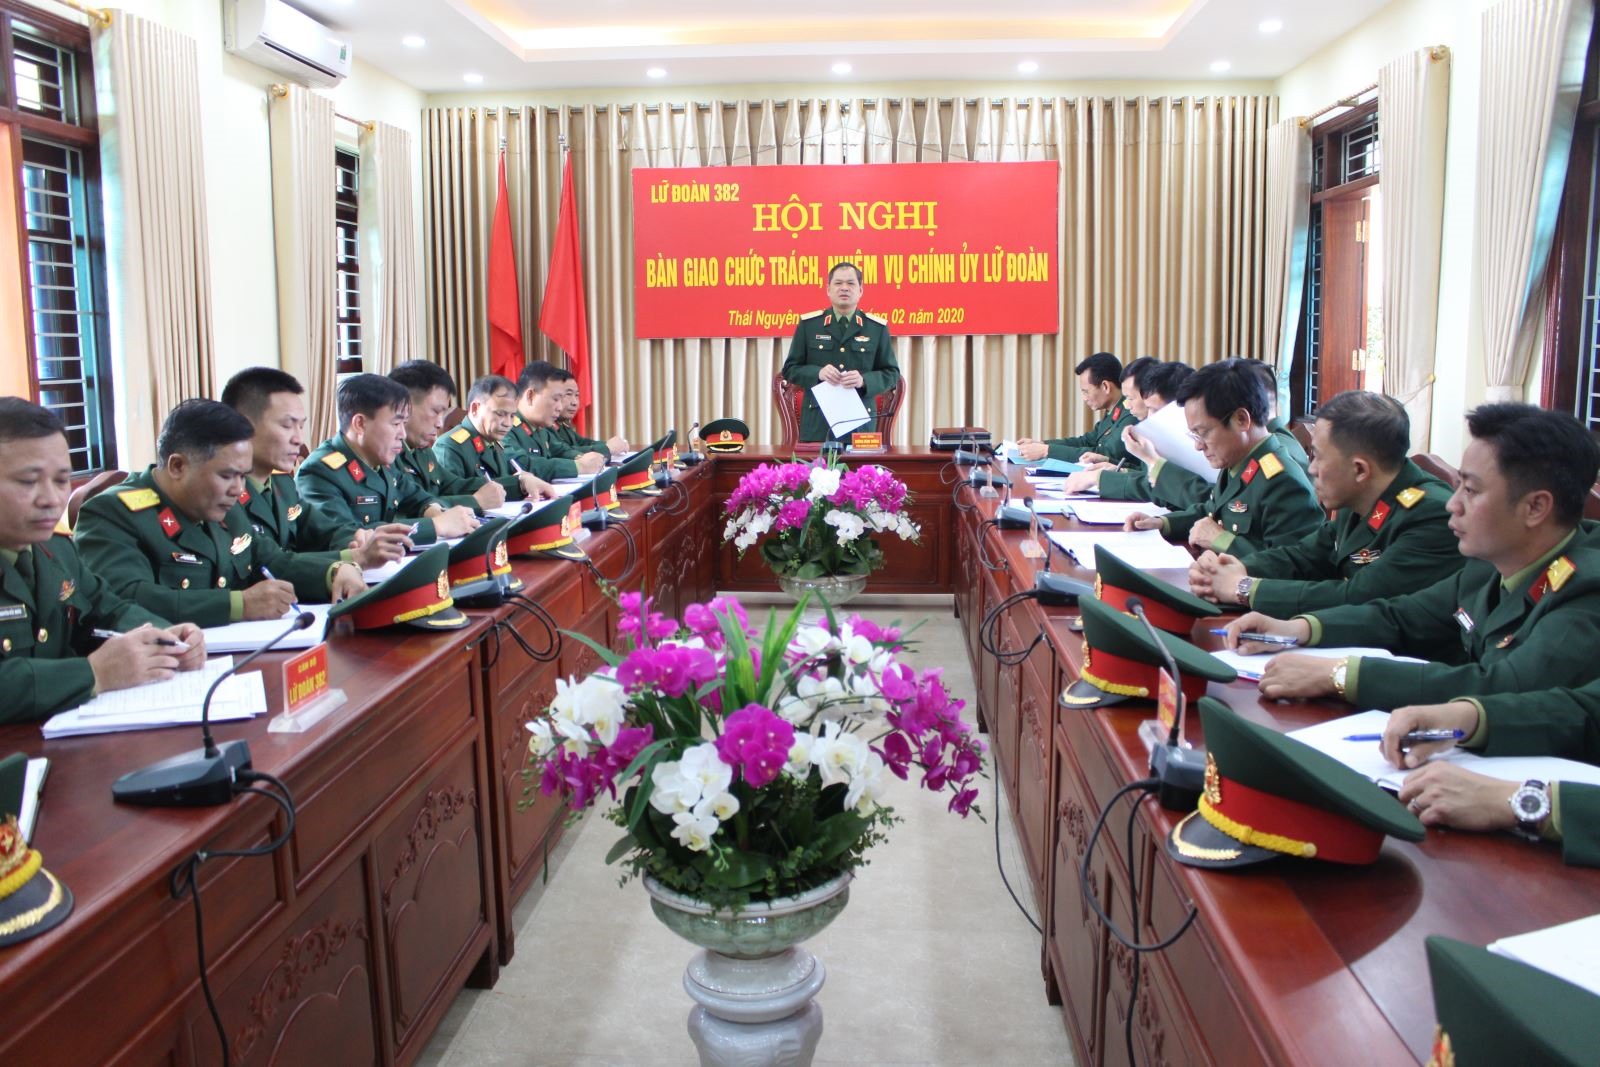 Hội nghị bàn giao chức vụ Chính ủy Lữ đoàn Pháo binh 382. Ảnh VGP